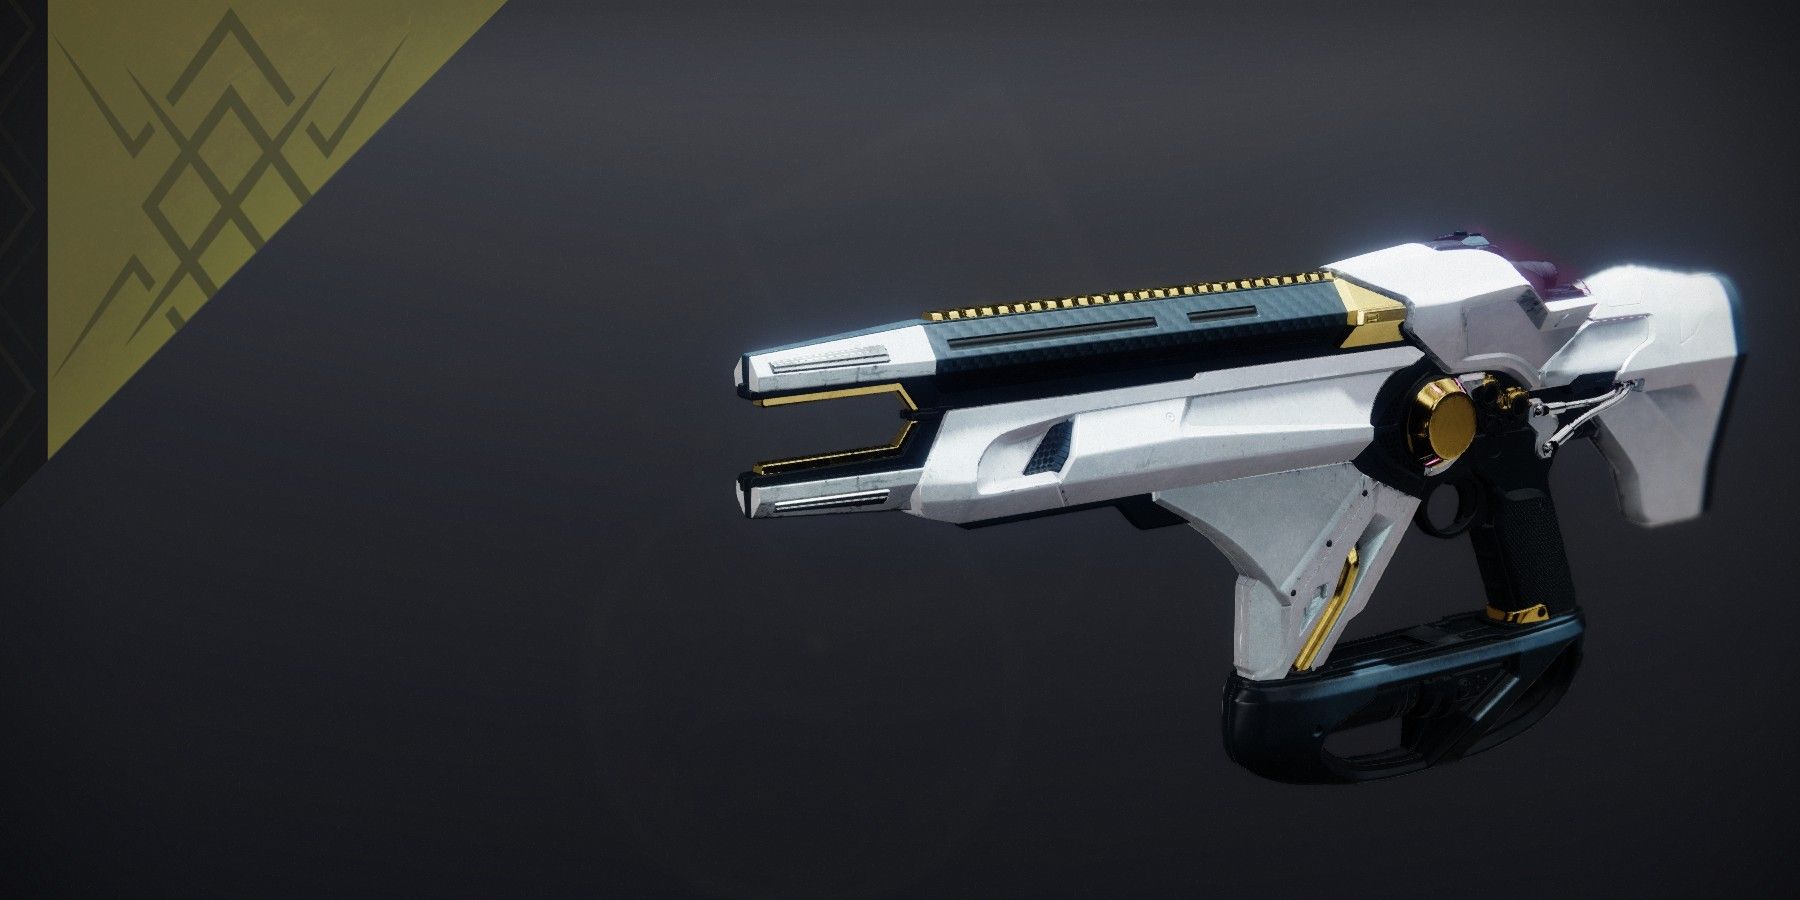 The Telesto Exotic Fusion Rifle Showcase in Destiny 2